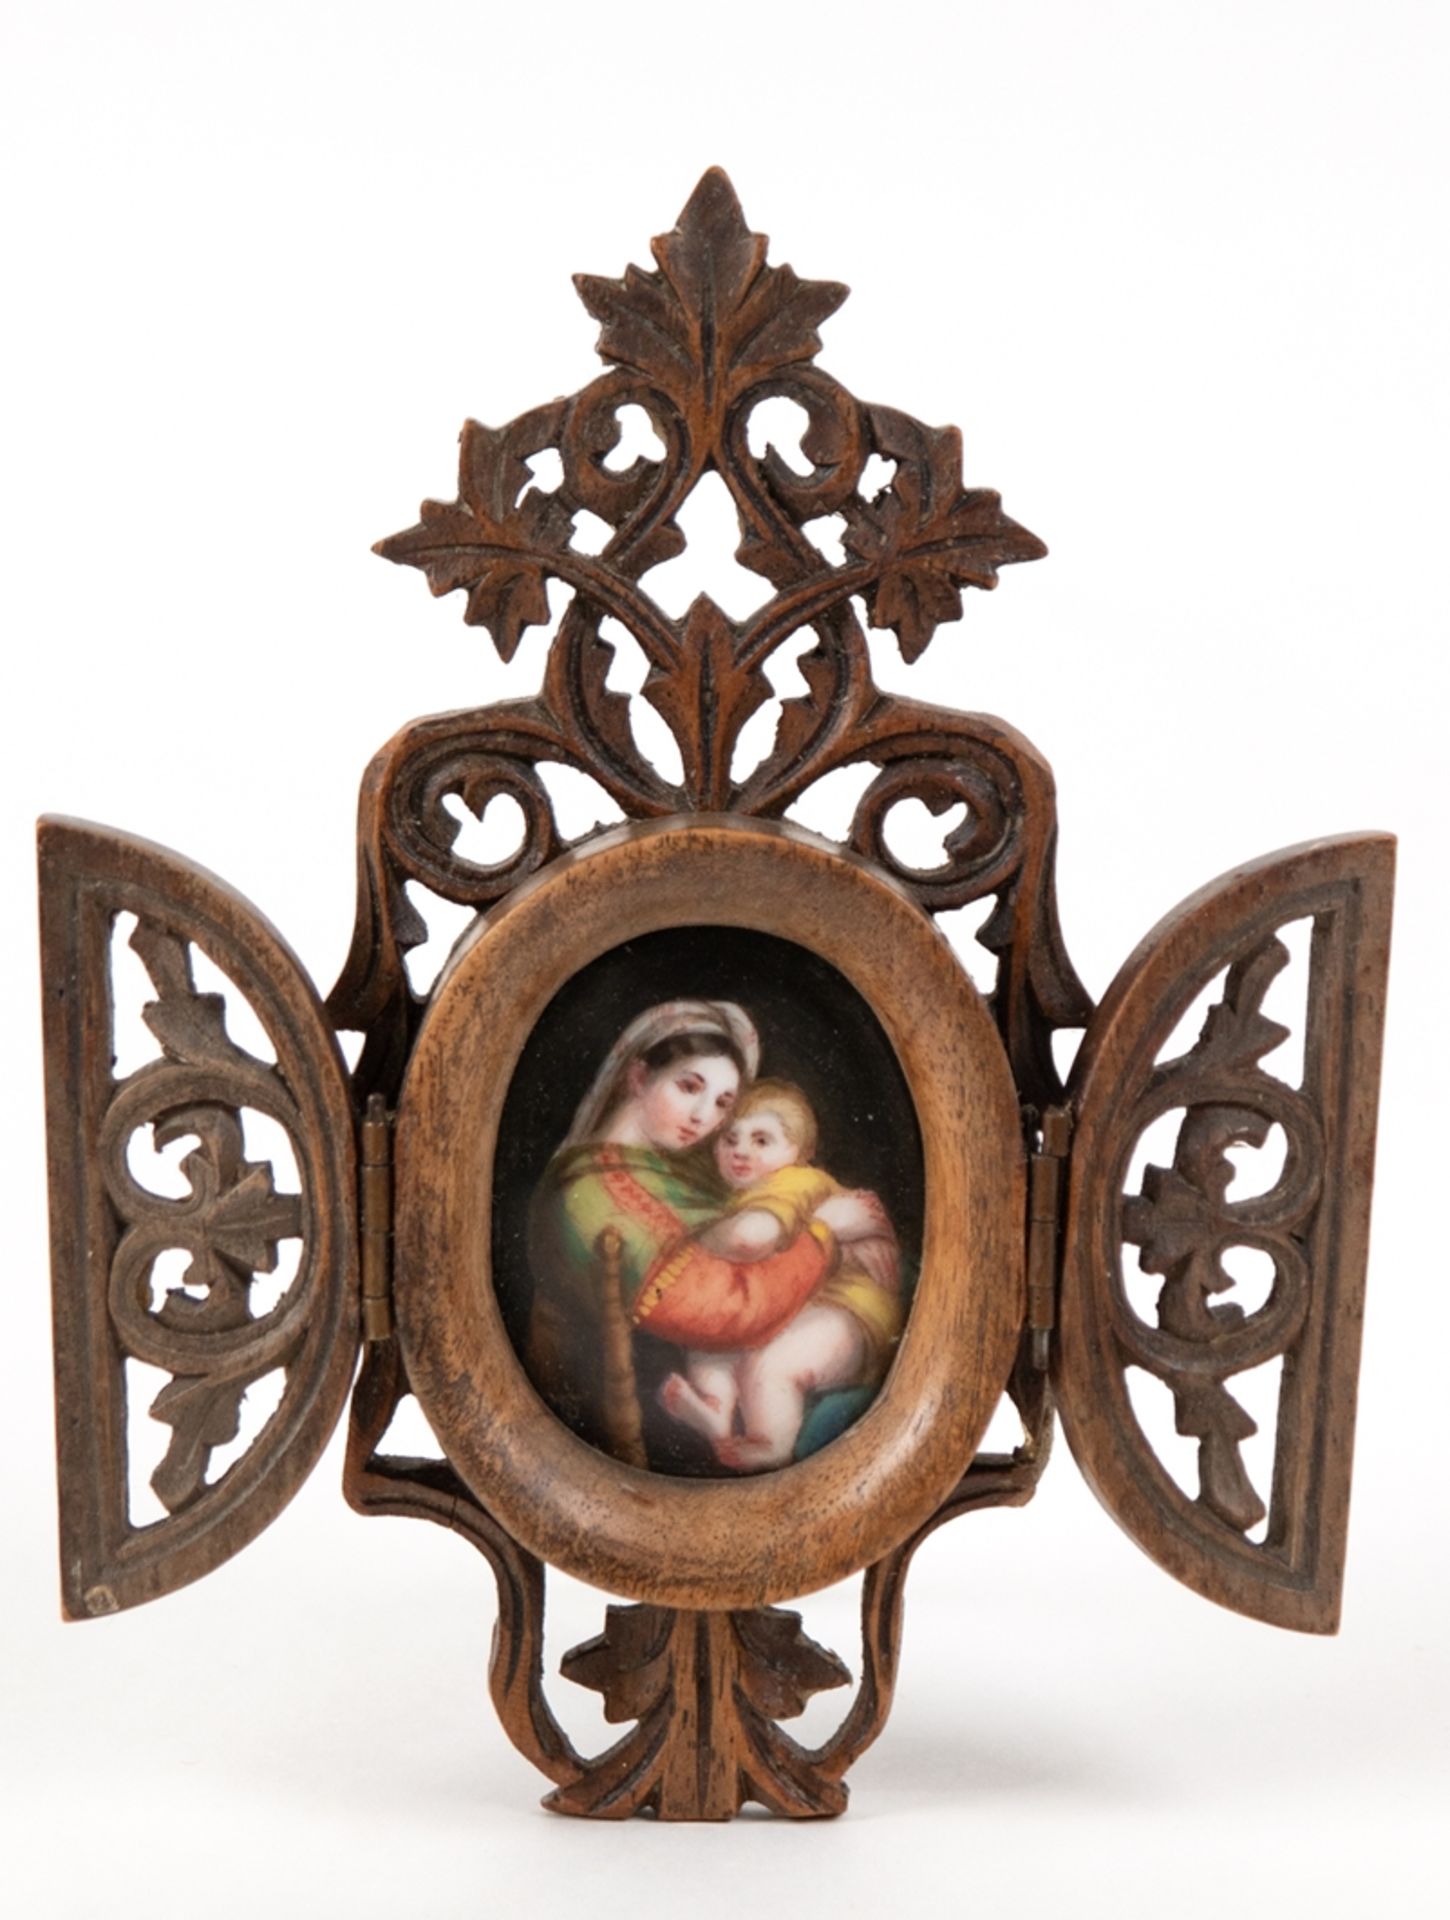 Heiligenbild "Madonna mit Kind", 19. Jh., Öl/Porzellan, nach Raffael, im geschnitzten, durchbrochen